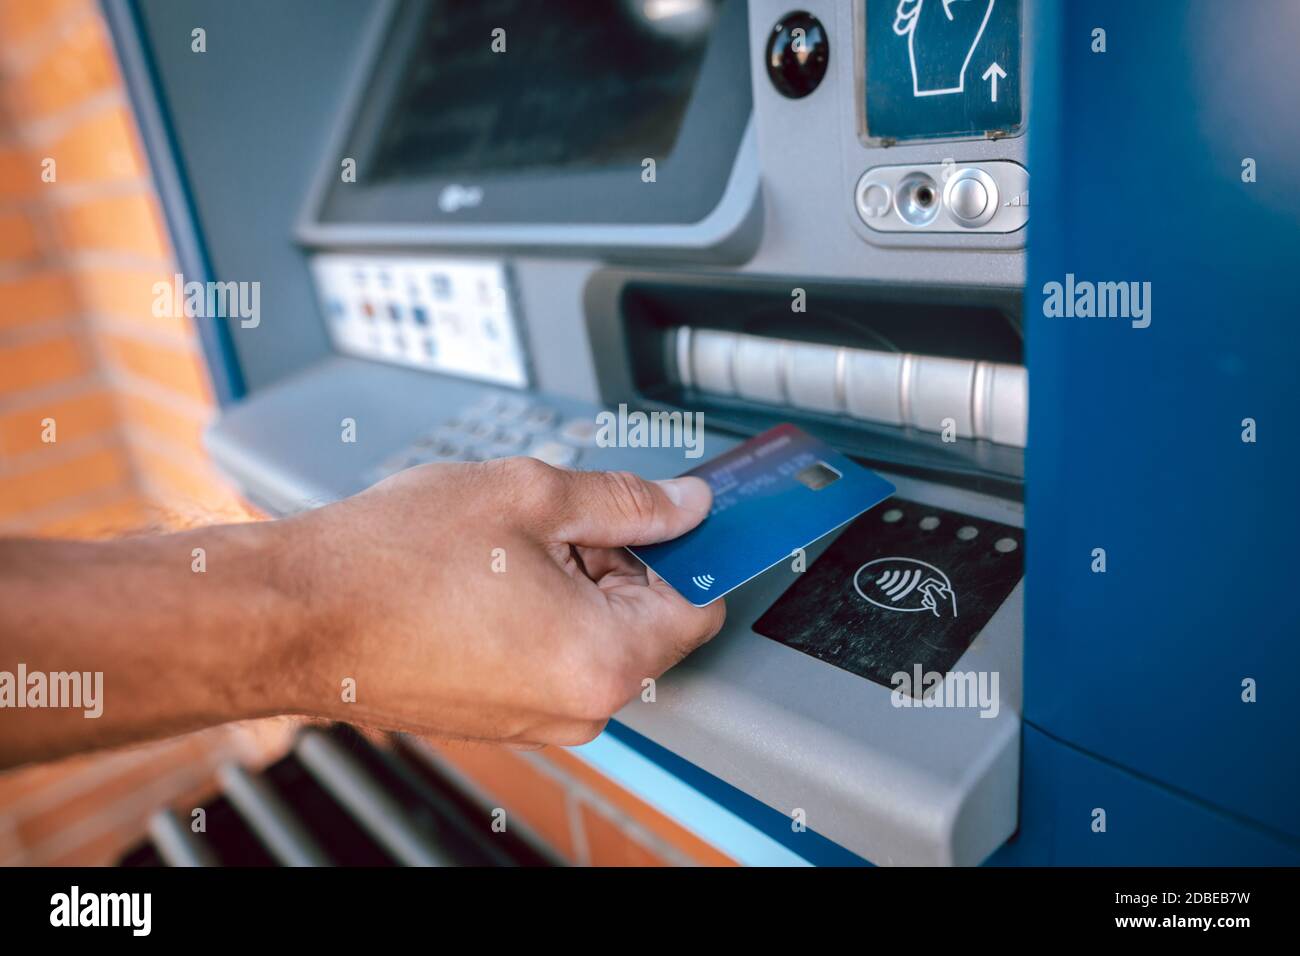 Prelievo contactless da ATM con carta di credito, concetto di finanziamento  Foto stock - Alamy